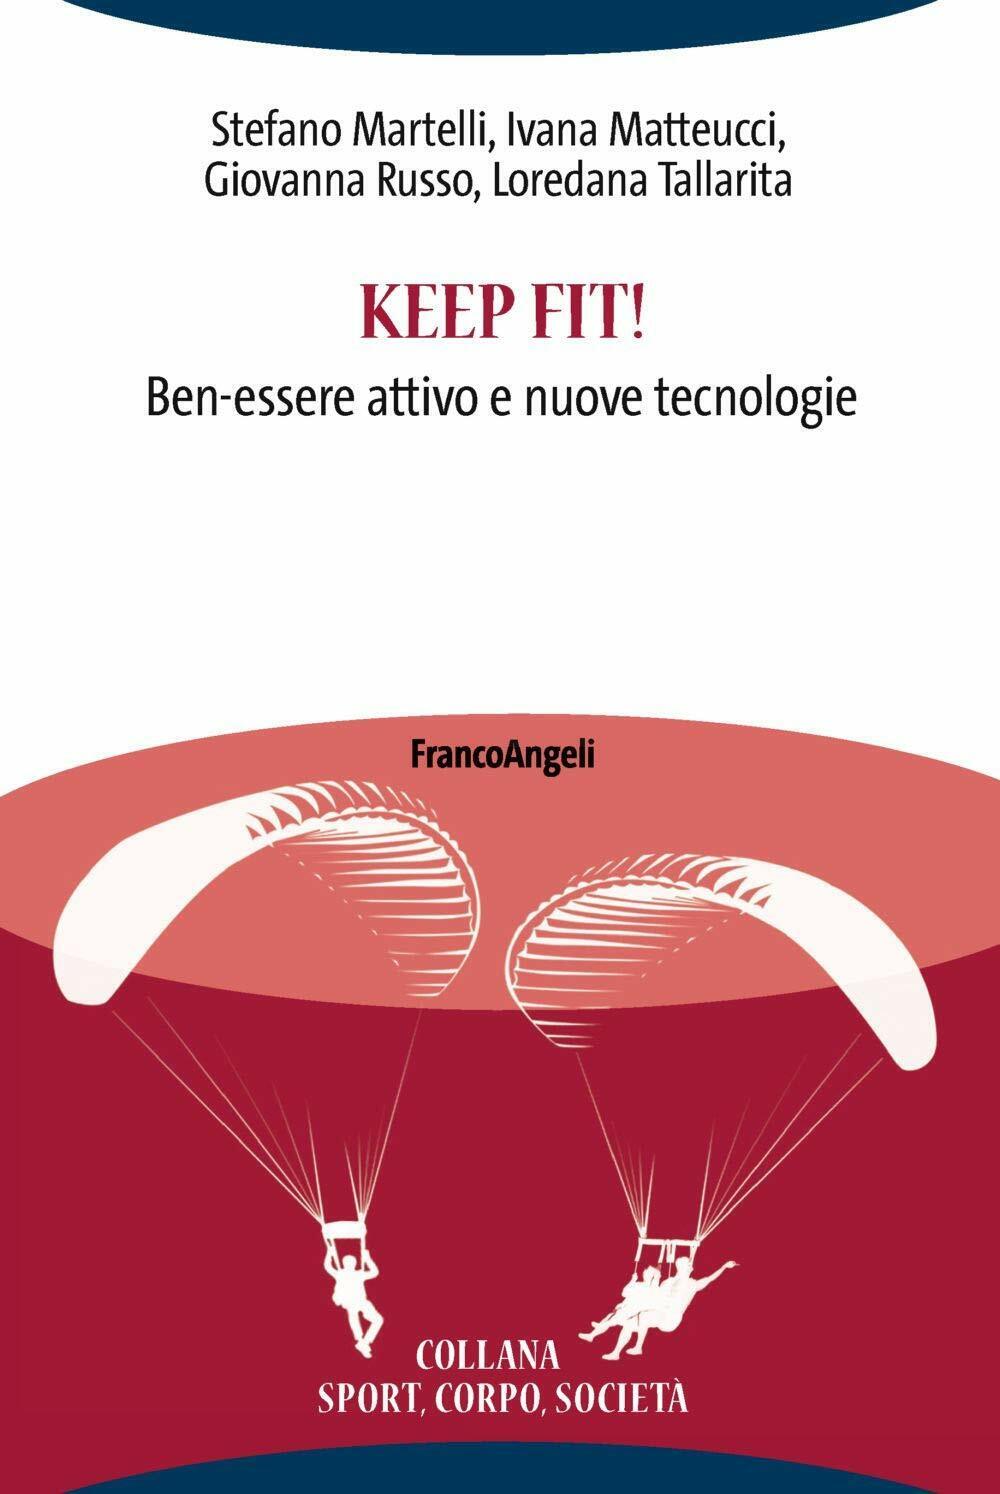 Keep fit! Ben-essere attivo e nuove tecnologie - Franco Angeli, 2019